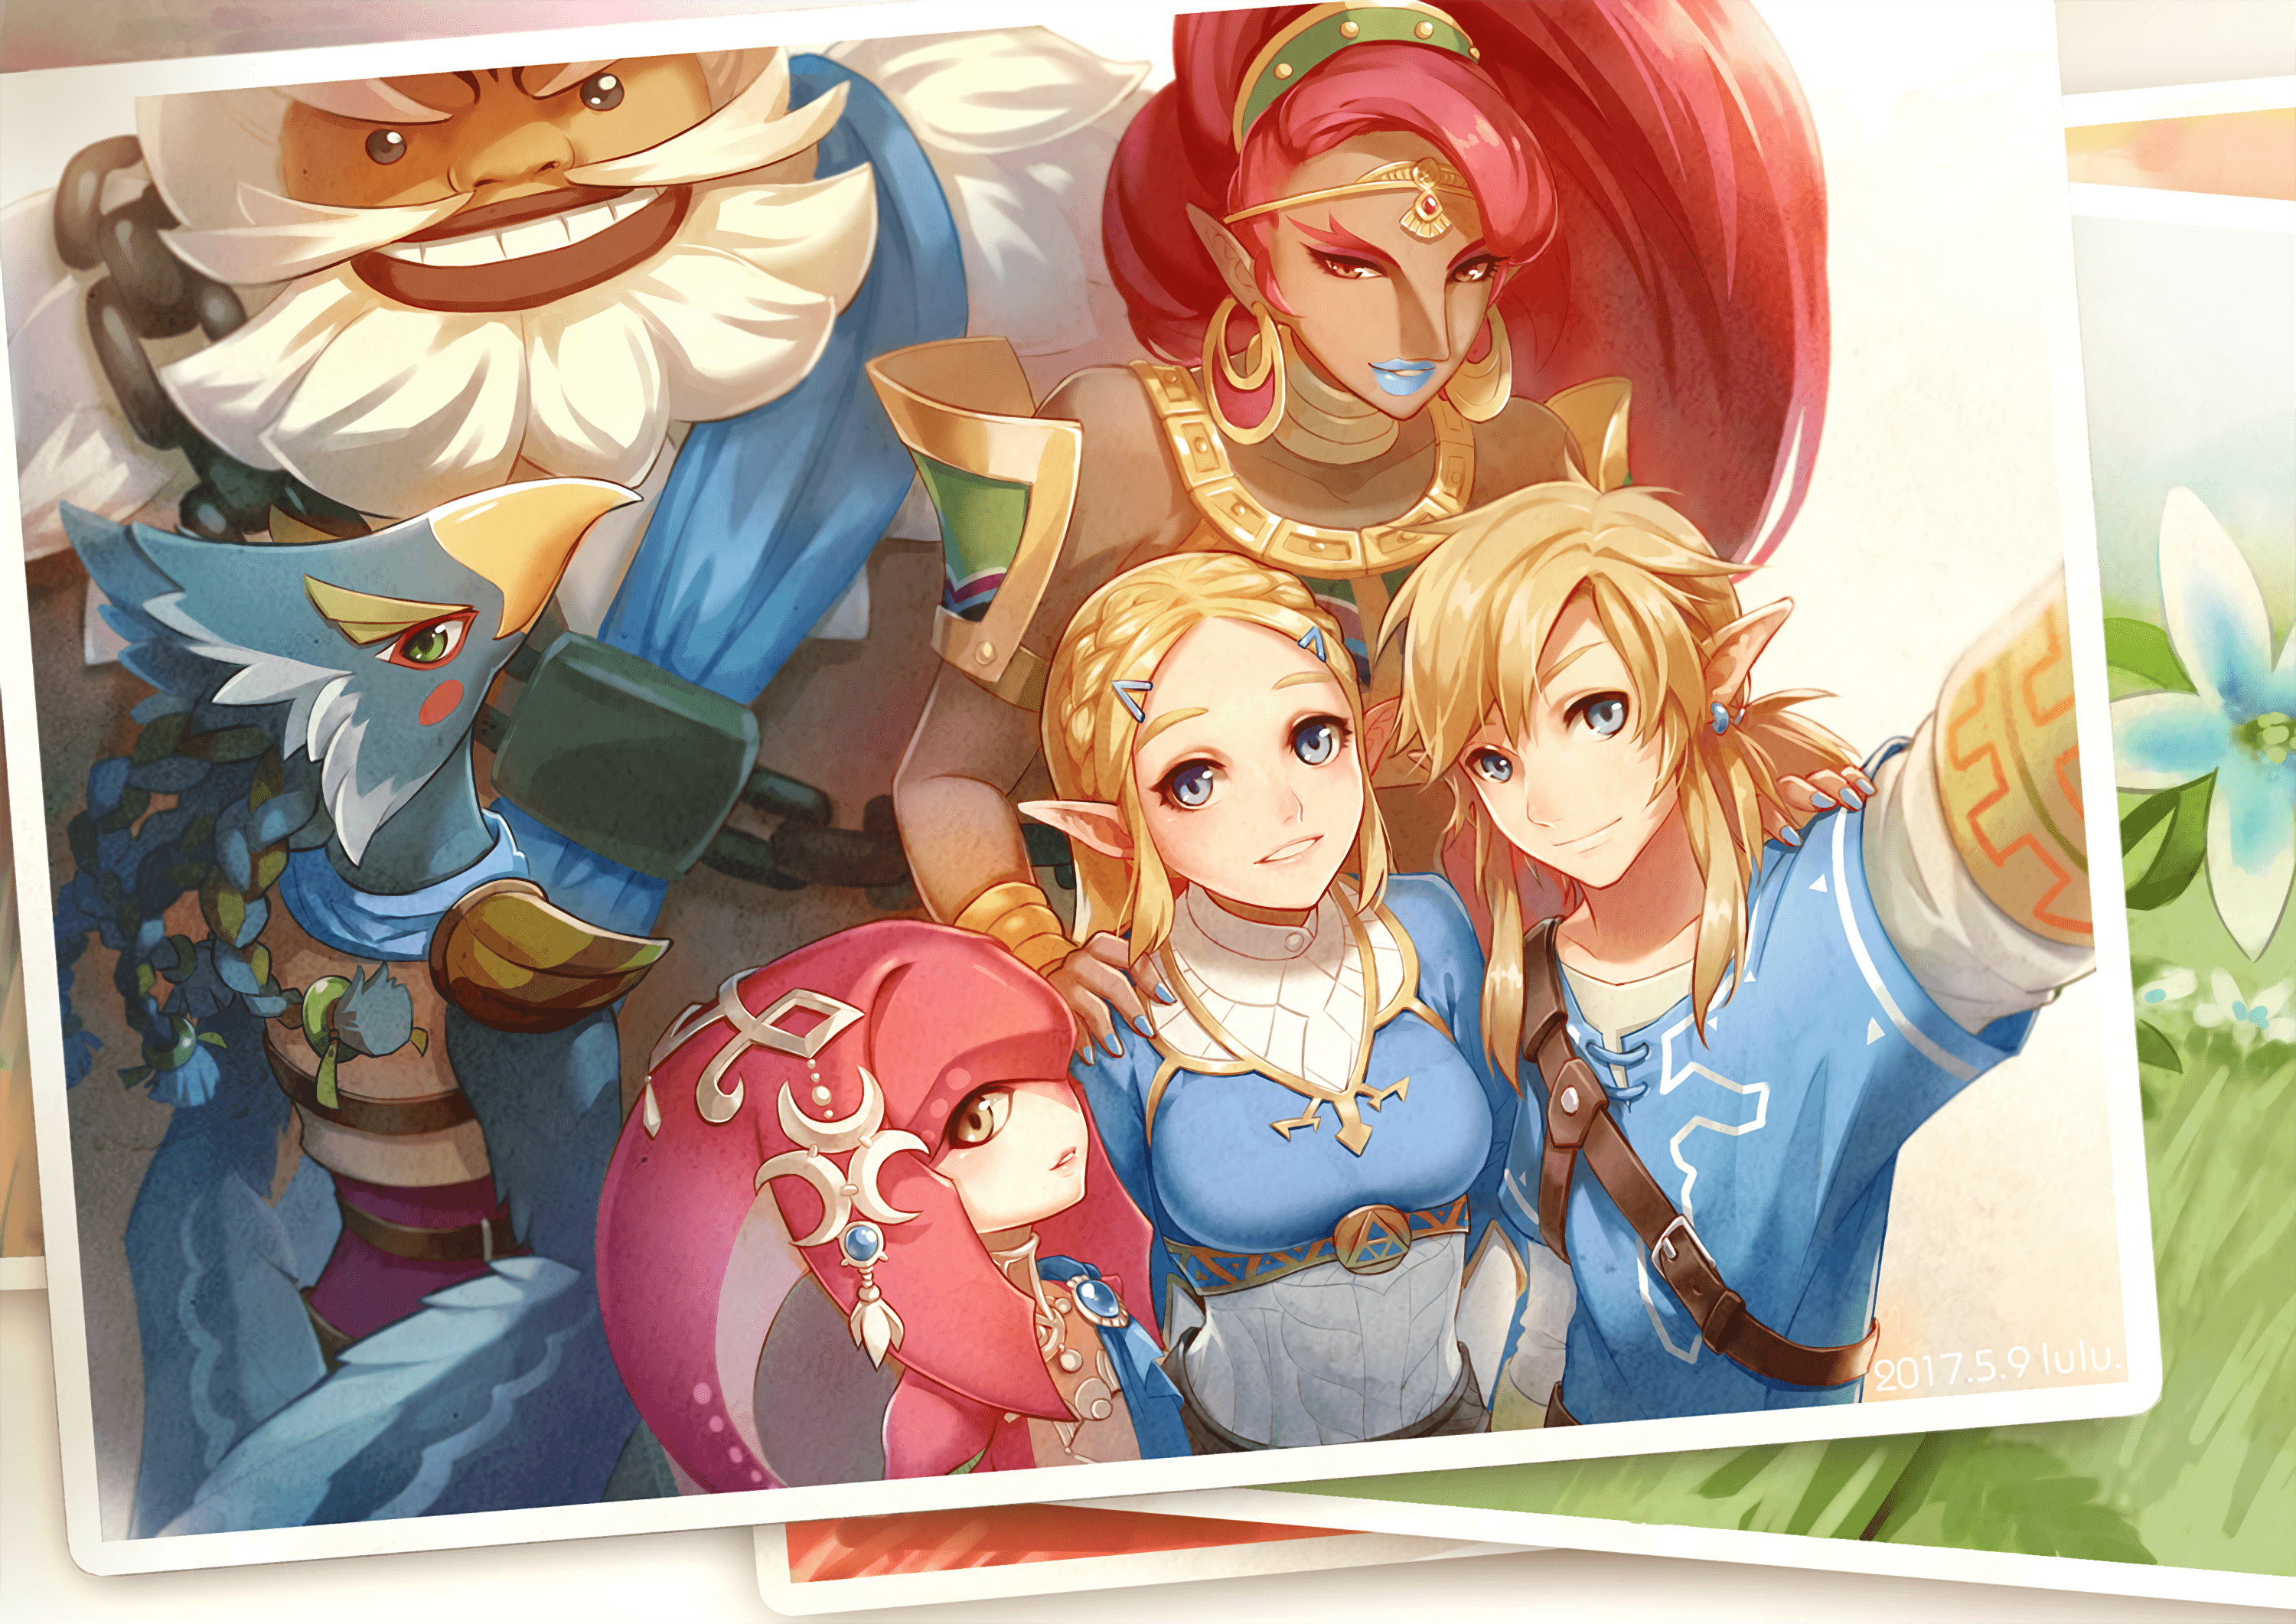 Daruk (The Legend Of Zelda) HD Wallpaper